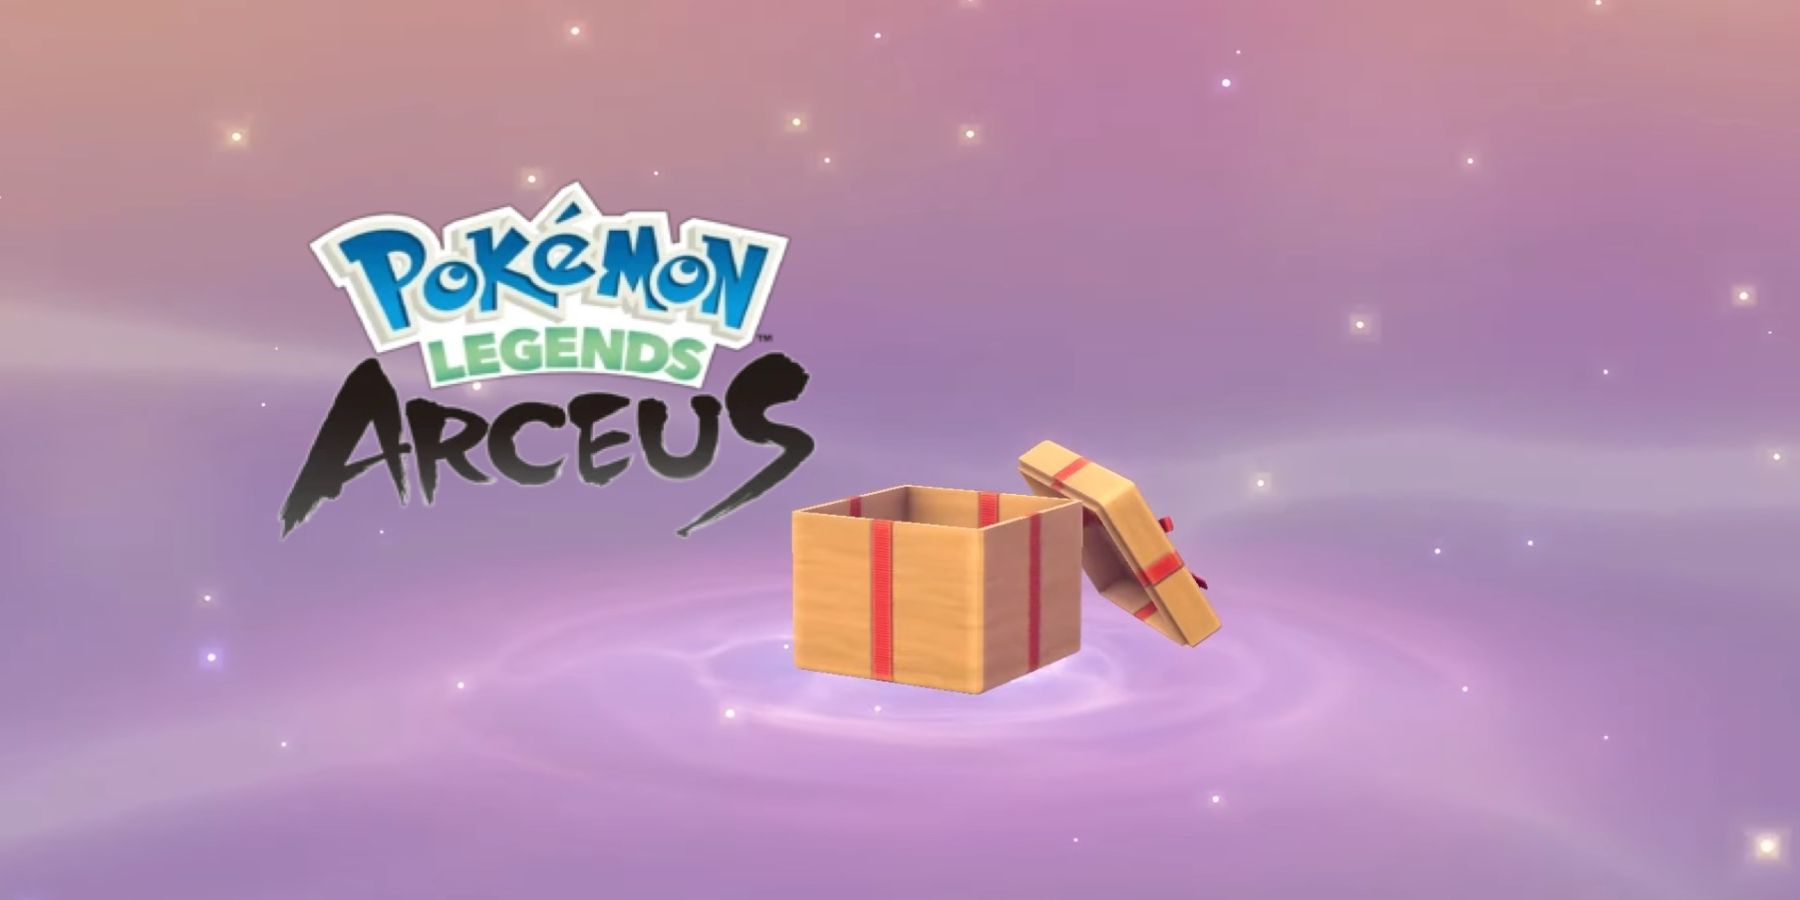 Pokemon Legends Arceus Mystery Gift Guide